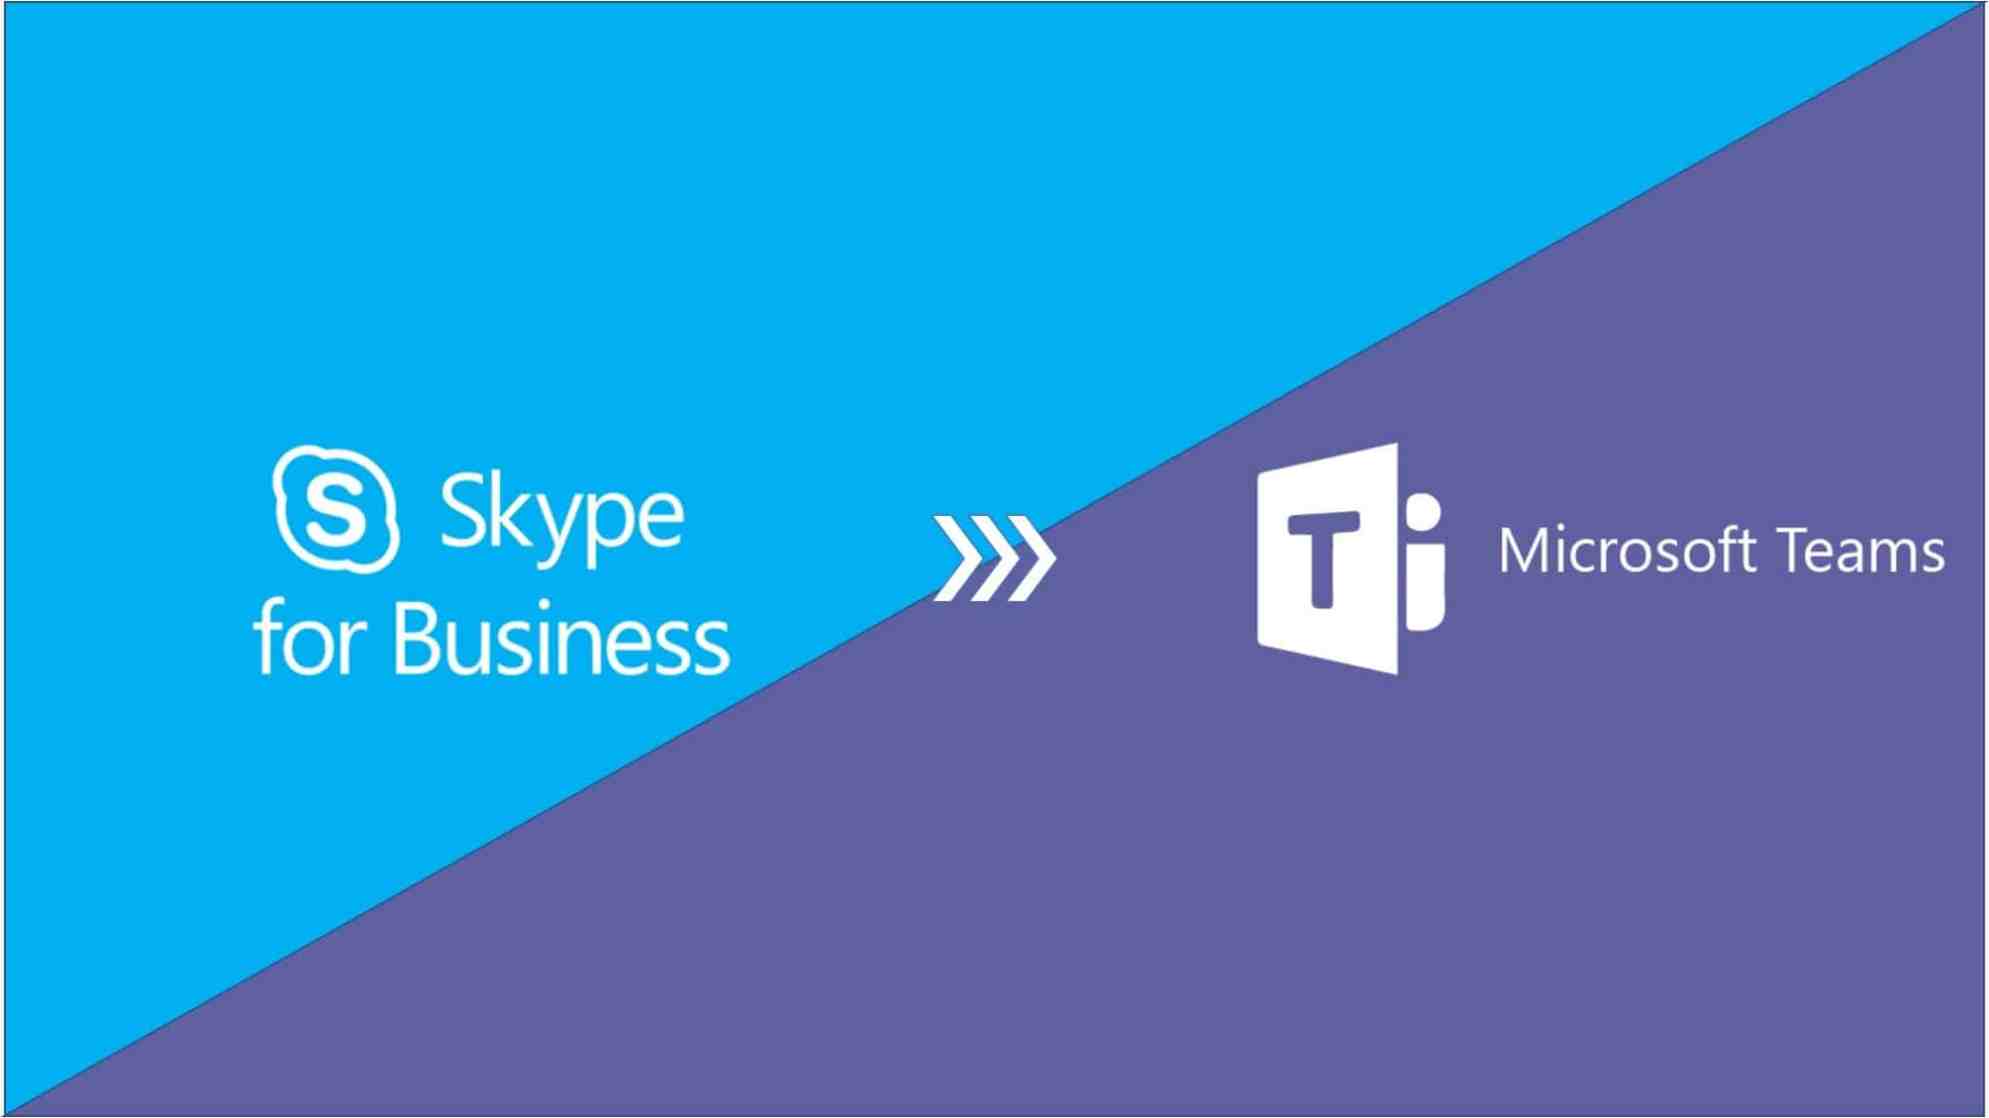 skype business plan 2